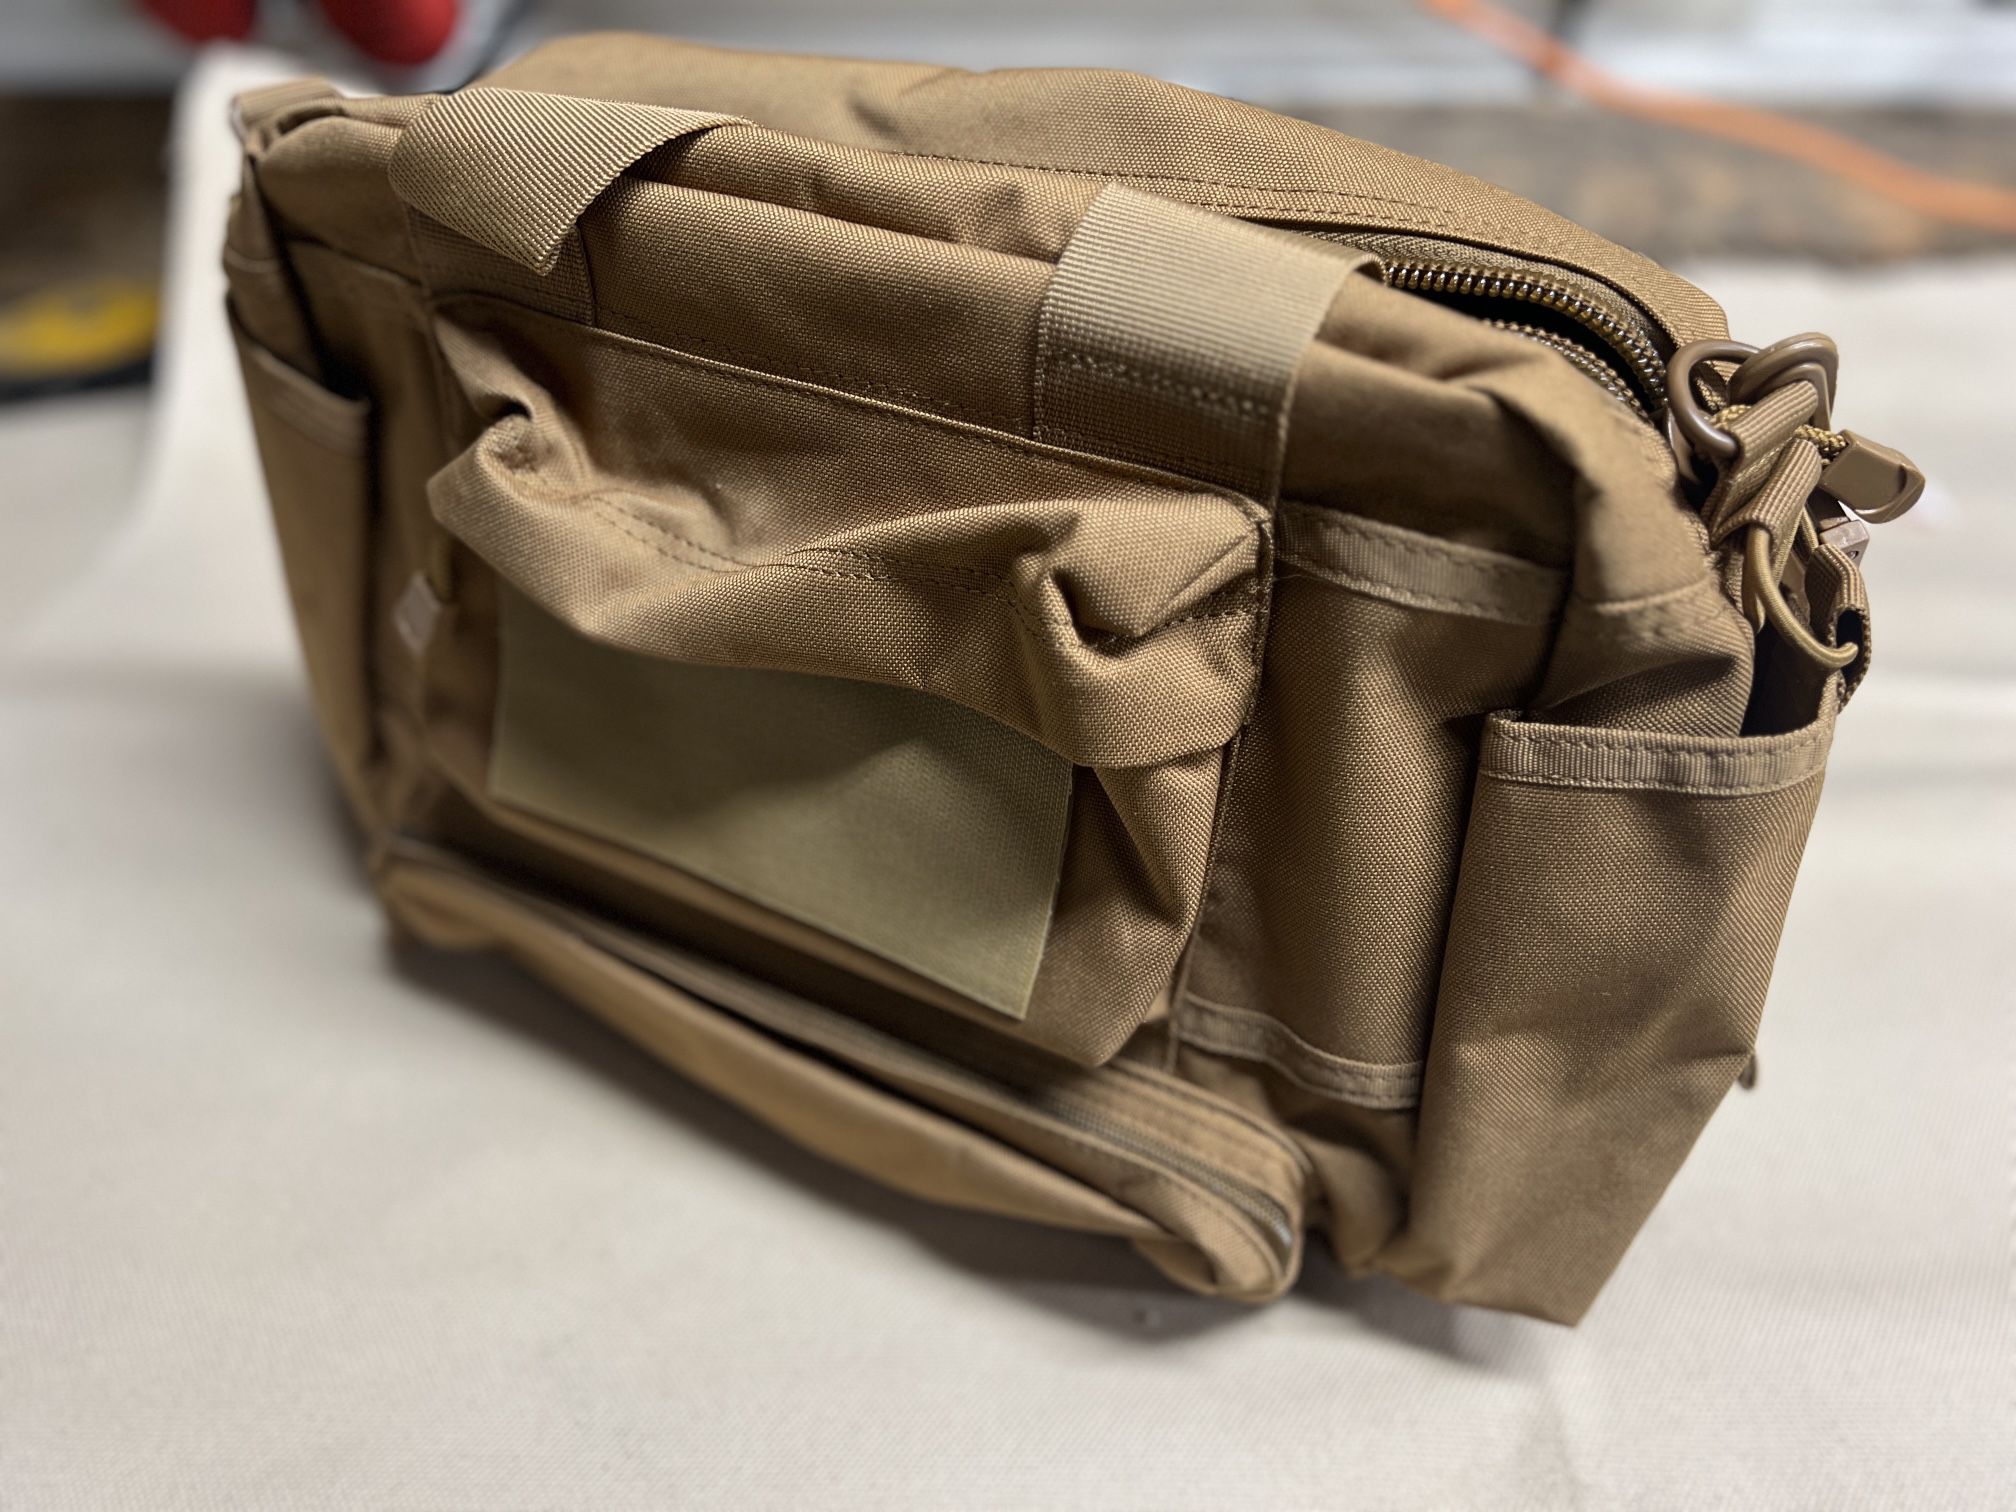 LAPG Range Bag, Laptop Case, Diaper Bag.